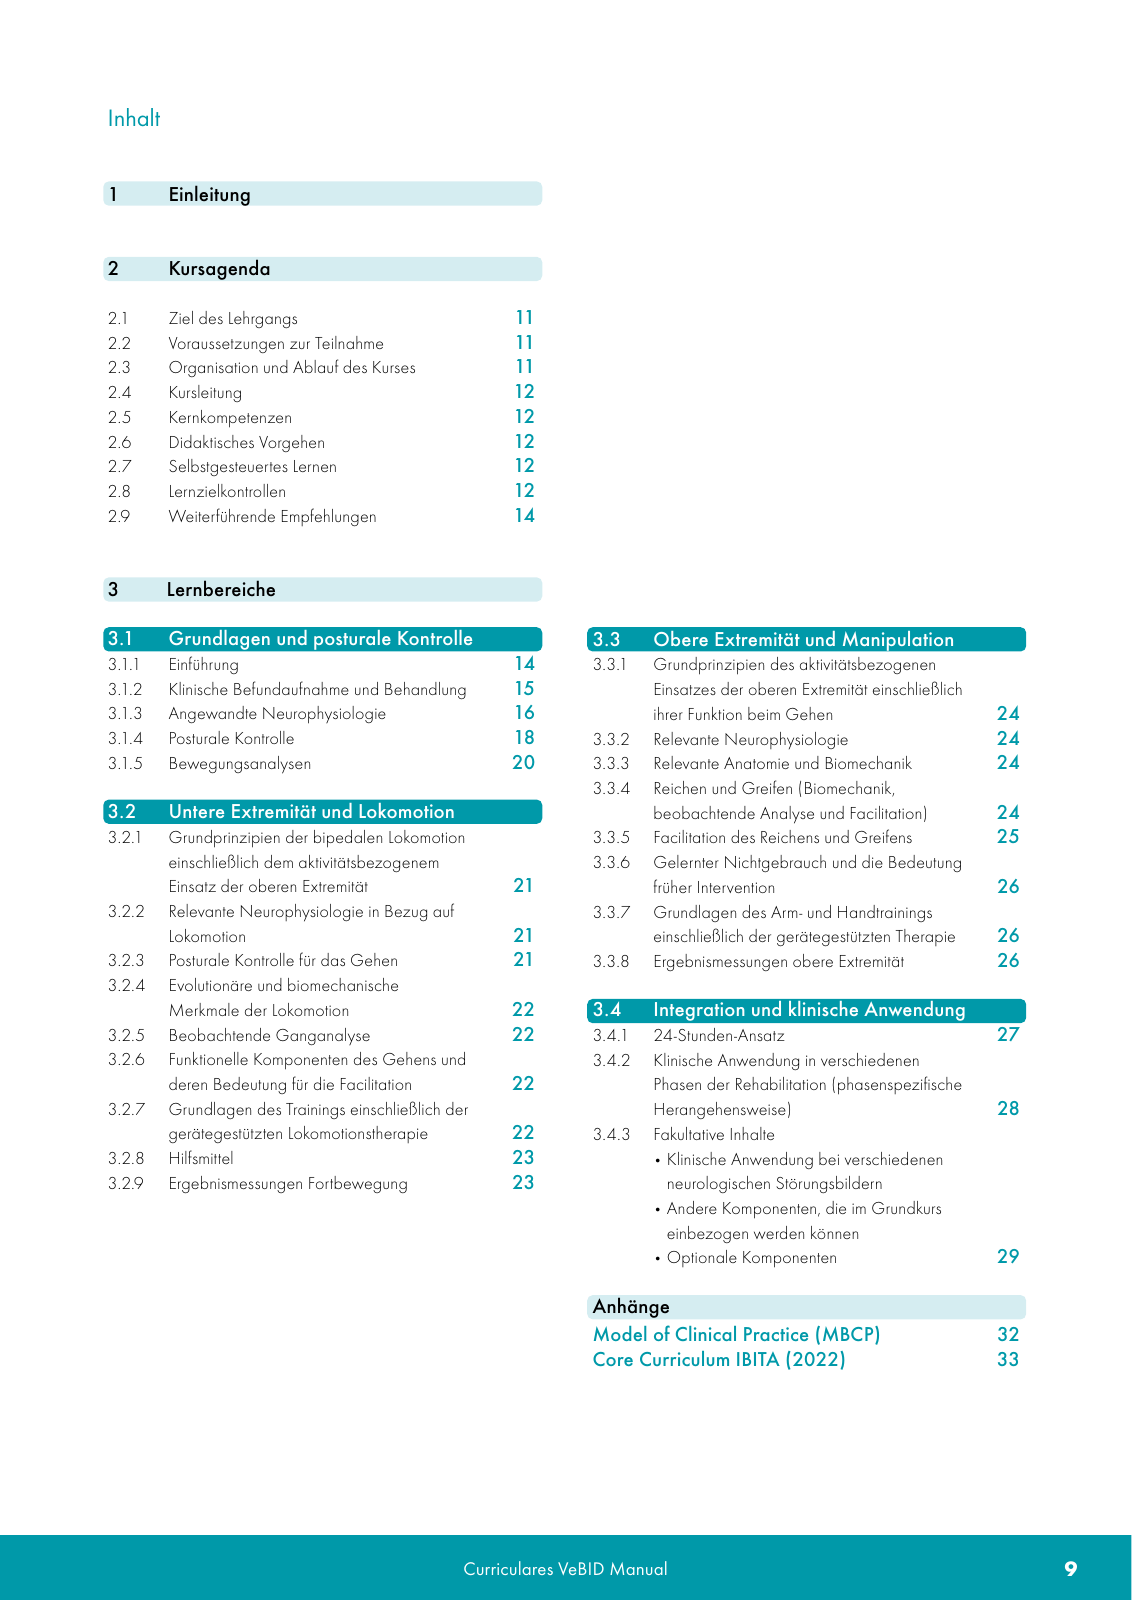 Vorschau VeBID Curriculum 2022 Seite 9